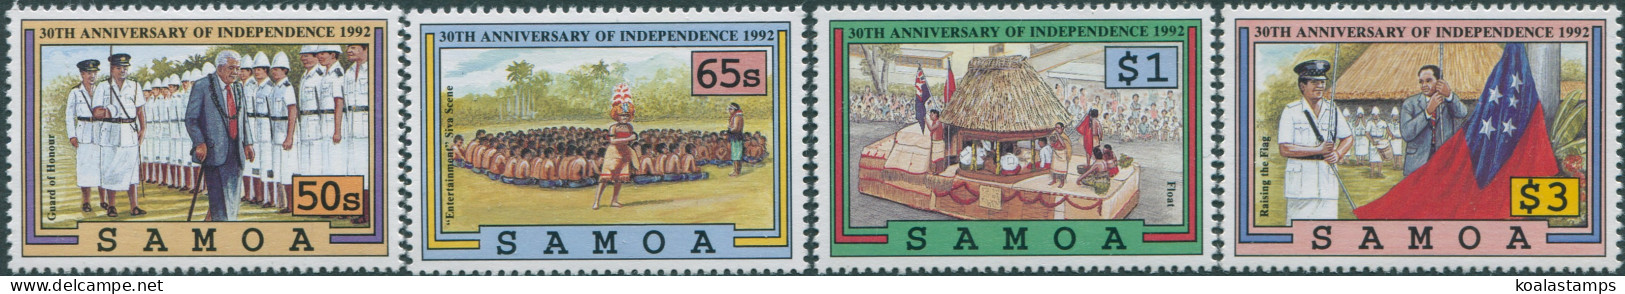 Samoa 1992 SG872-875 30th Anniversary Set MNH - Samoa